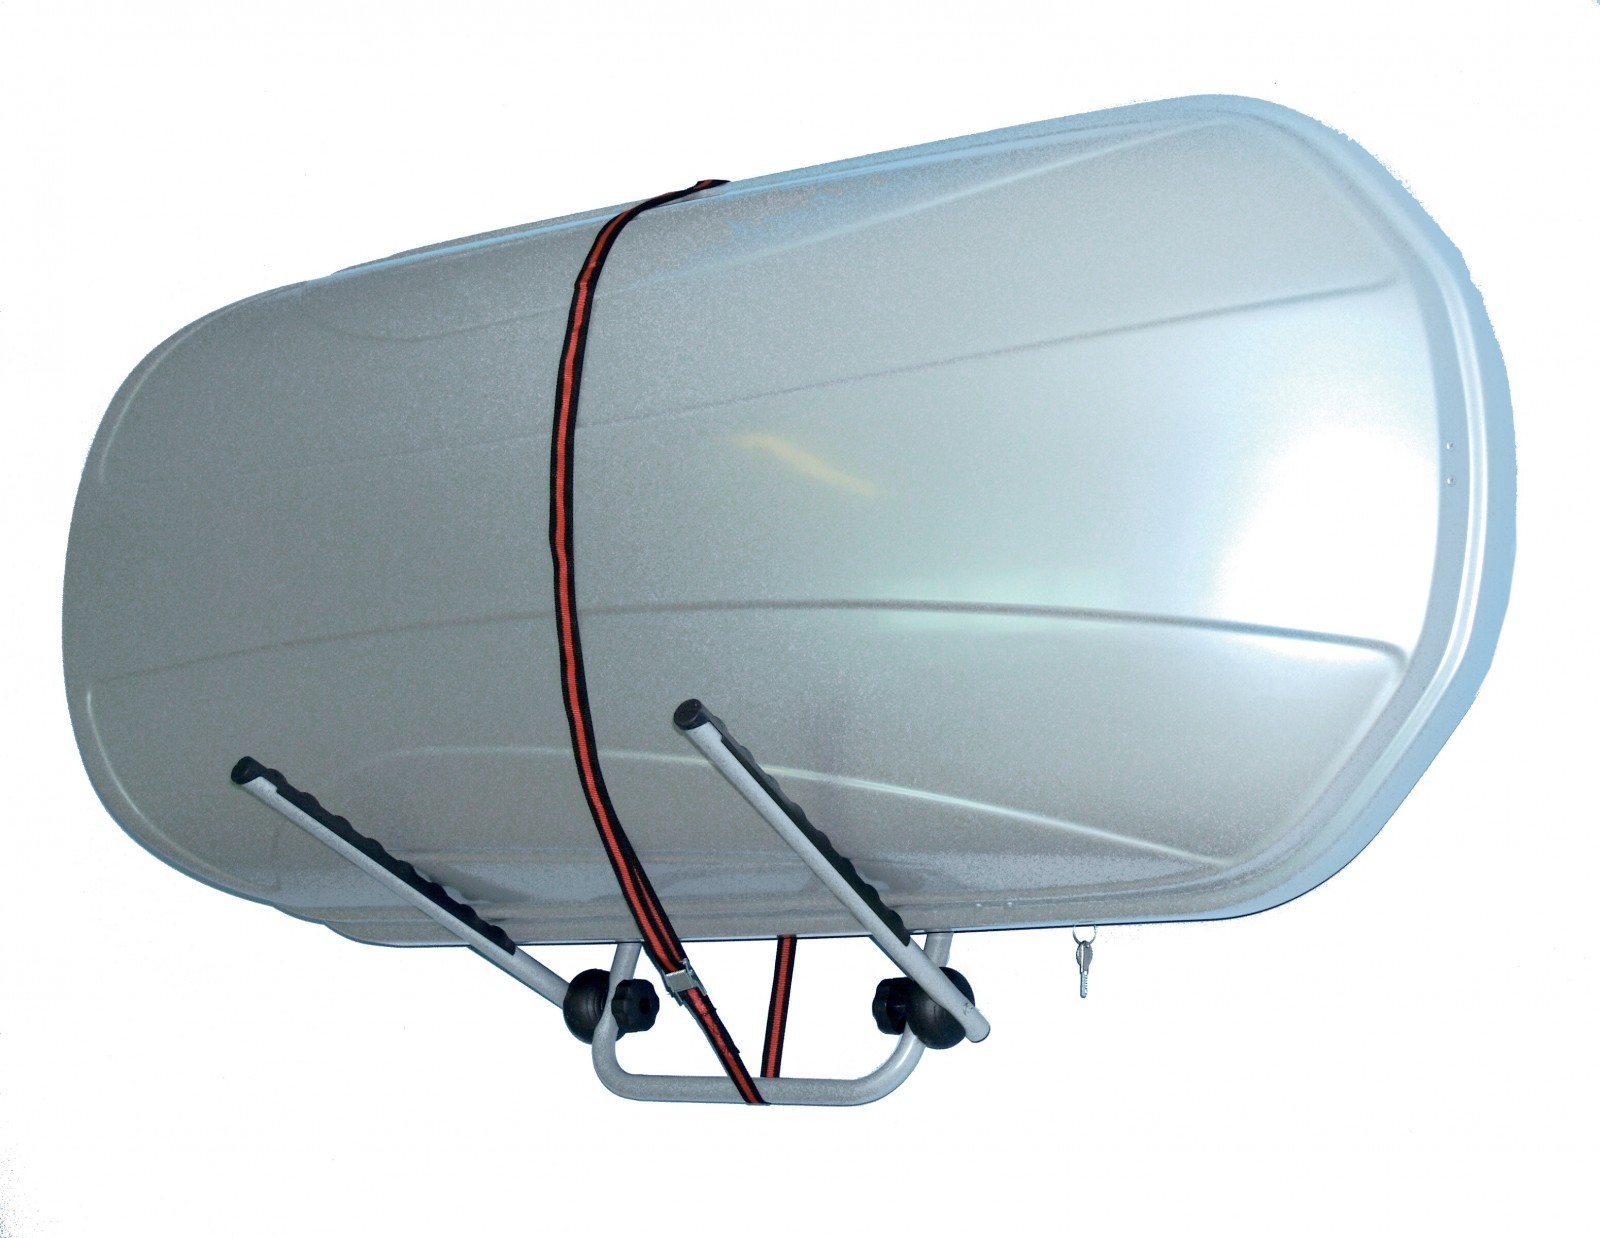 FREE Dachbox Hülle Aufbewahrung bis 160x90x42 cm Haube Überzug Schutz Sack